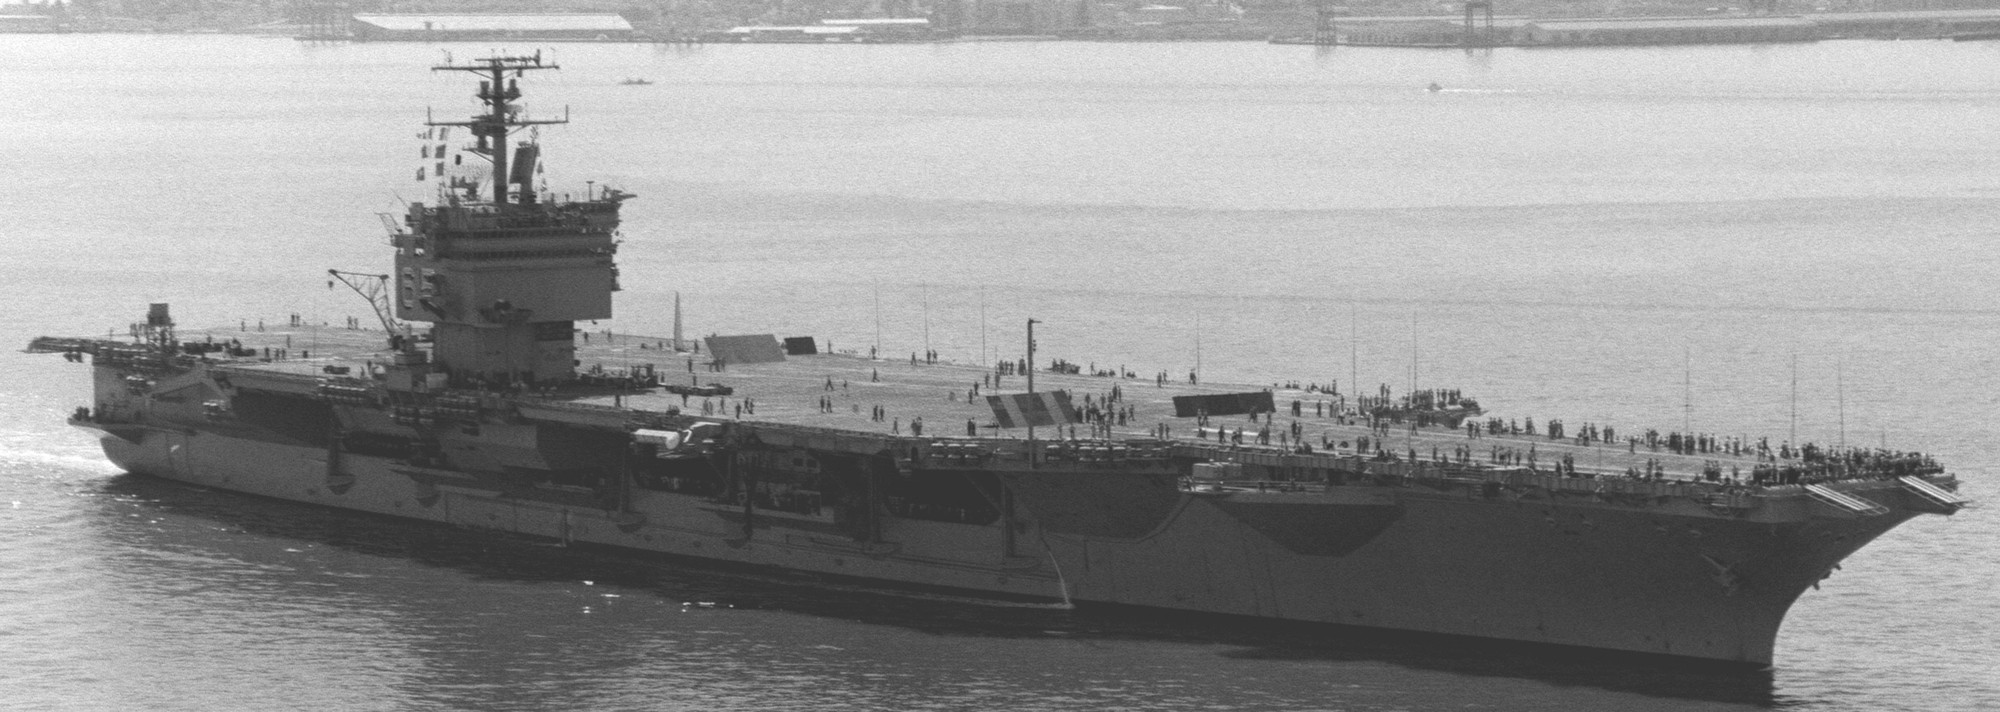 cvn-65 uss enterprise aircraft carrier us navy 1982 160